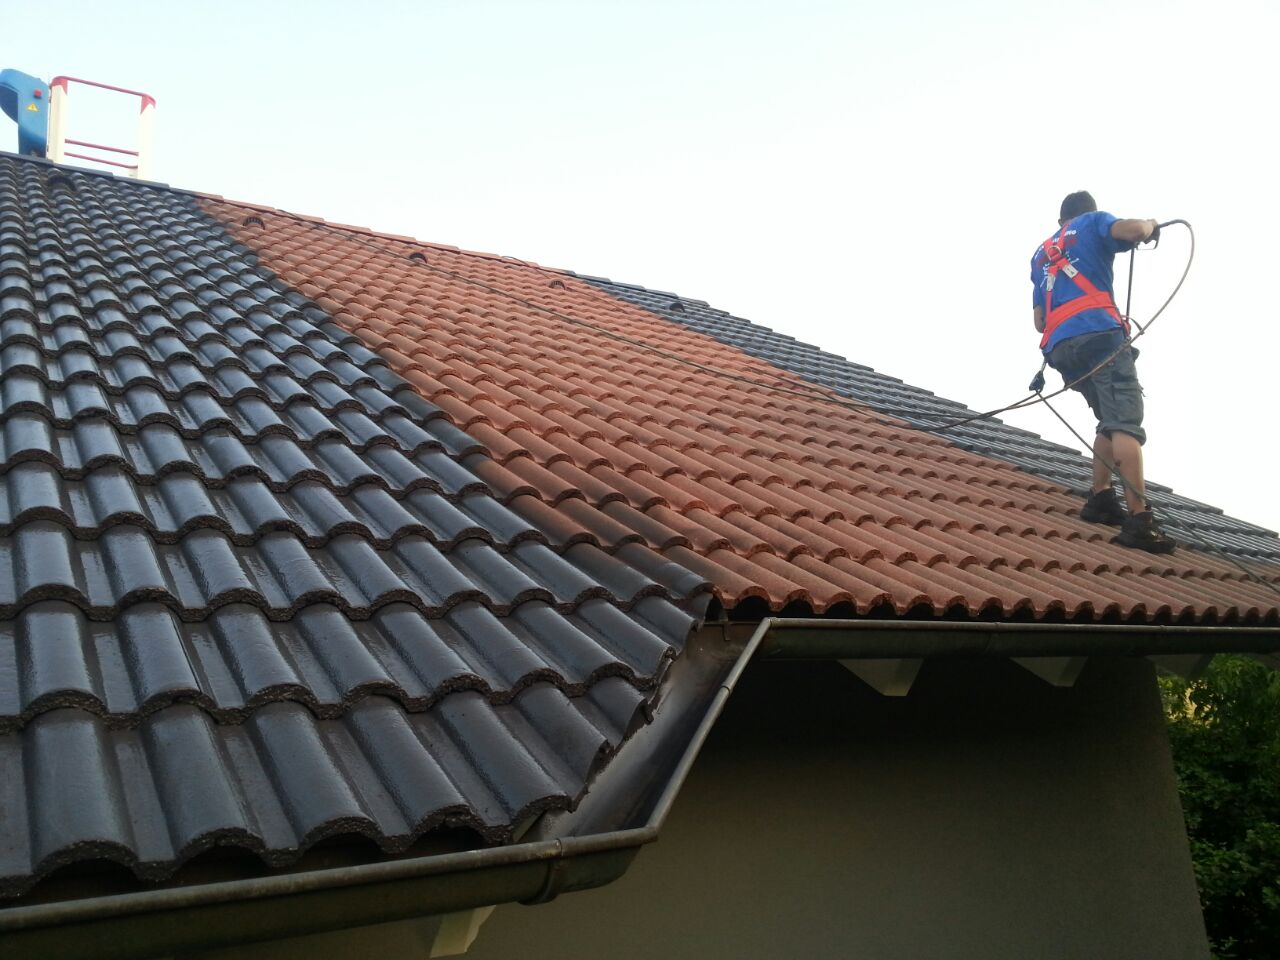 Dachbeschichtung durch aufsprhen von Farbe